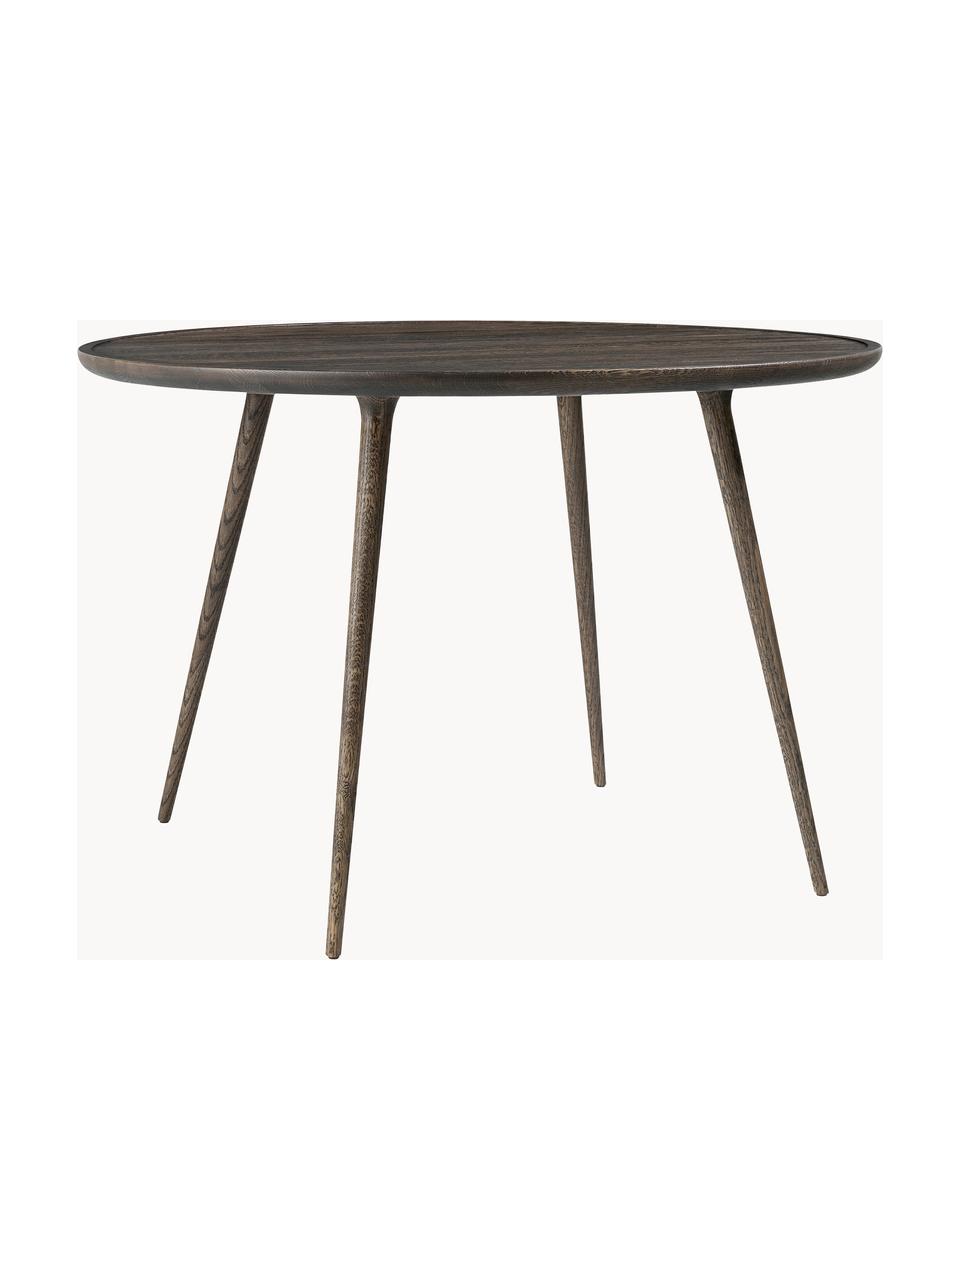 Okrúhly stôl z dubového dreva, Accent rôzne veľkosti, Dubové drevo, s FSC certifikátom, Dubové drevo, tmavohnedá lakovaná, Ø 110 x V 73 cm